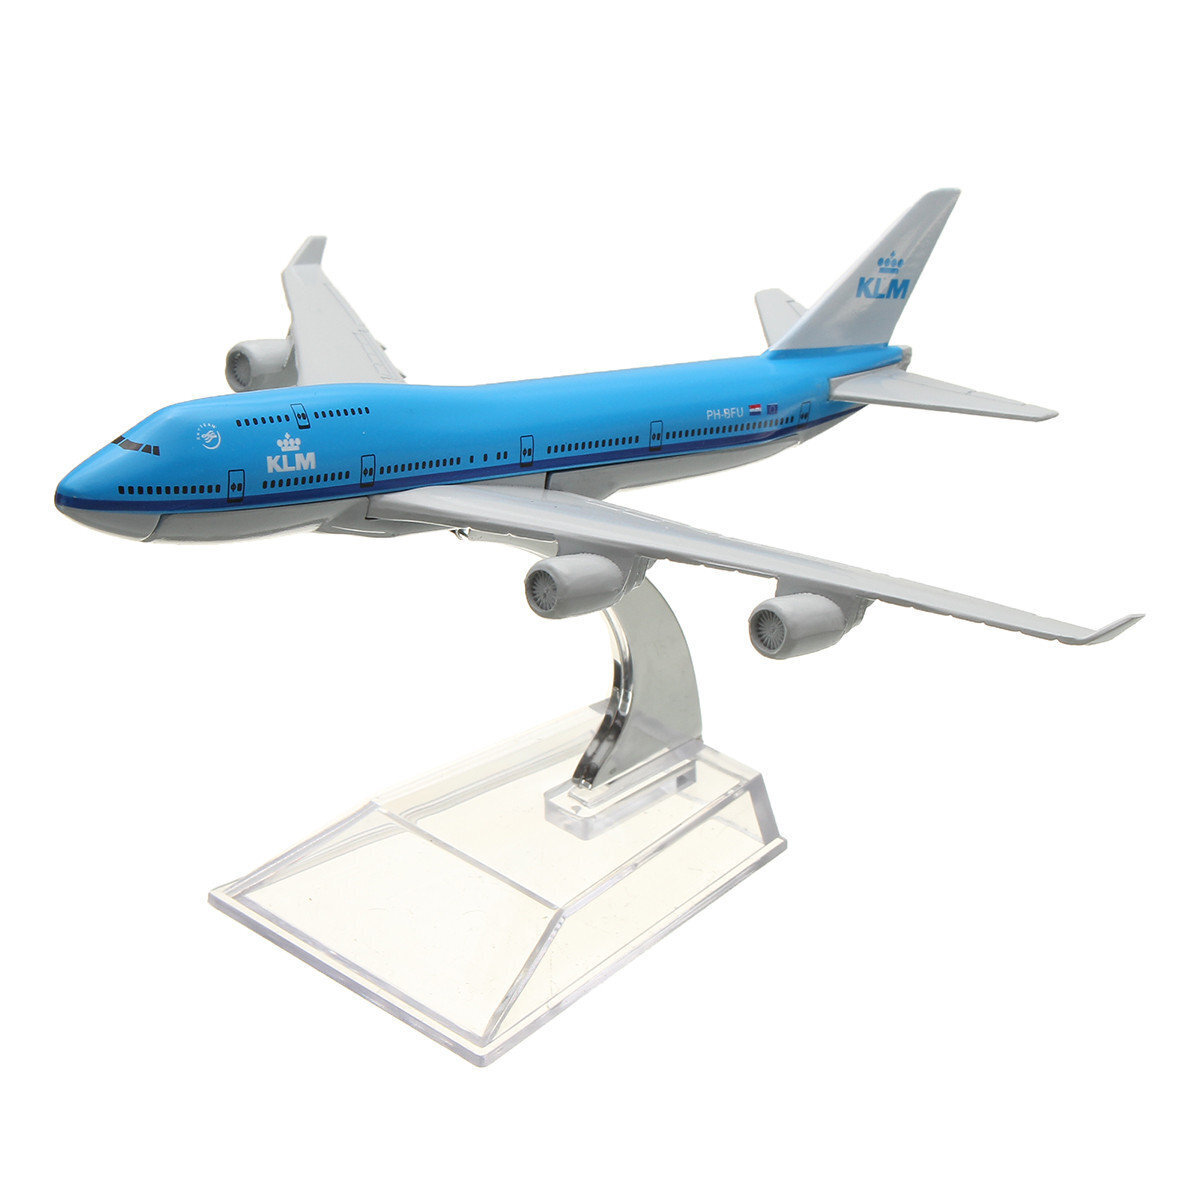 Металлическая модель самолета. Металлическая модель самолета Боинг 747. Боинг 747 модель КЛМ. Модель самолета Боинг 747 авиакомпания КЛМ. 747 КЛМ модель самолета.